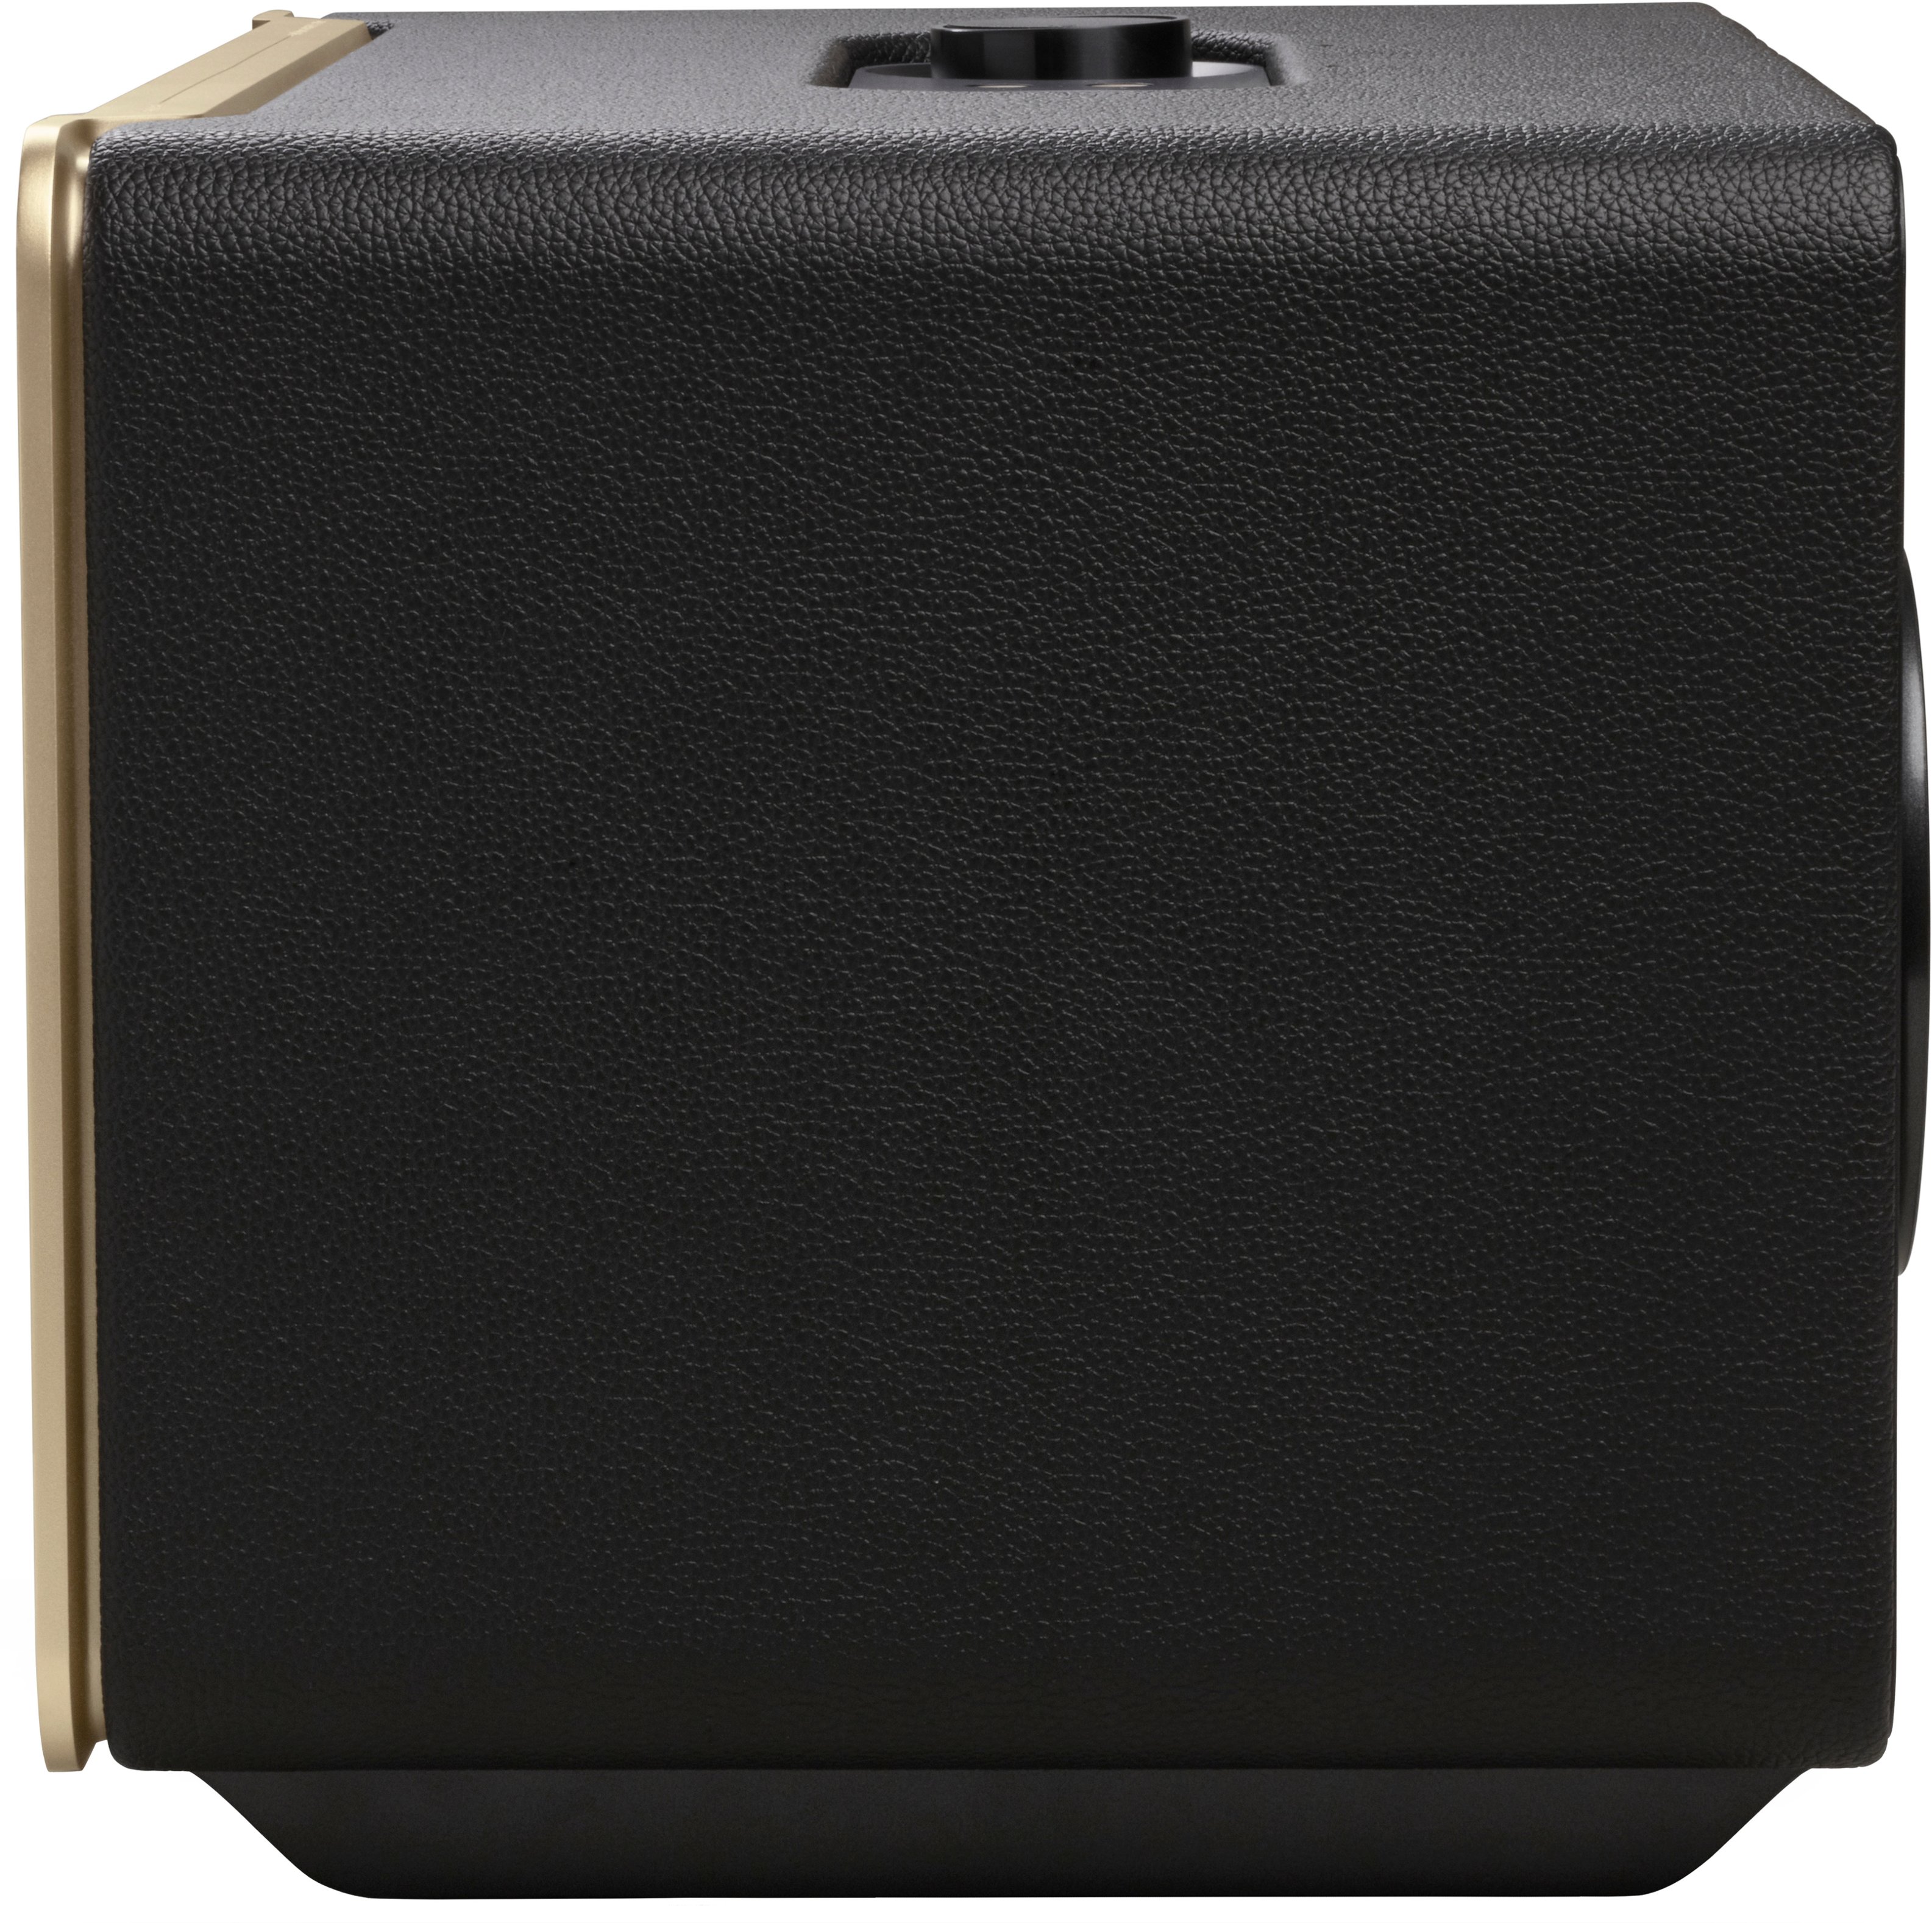 JBL Authentics 500 Smart Home Speaker Black JBLAUTH500BLKAM - Best Buy